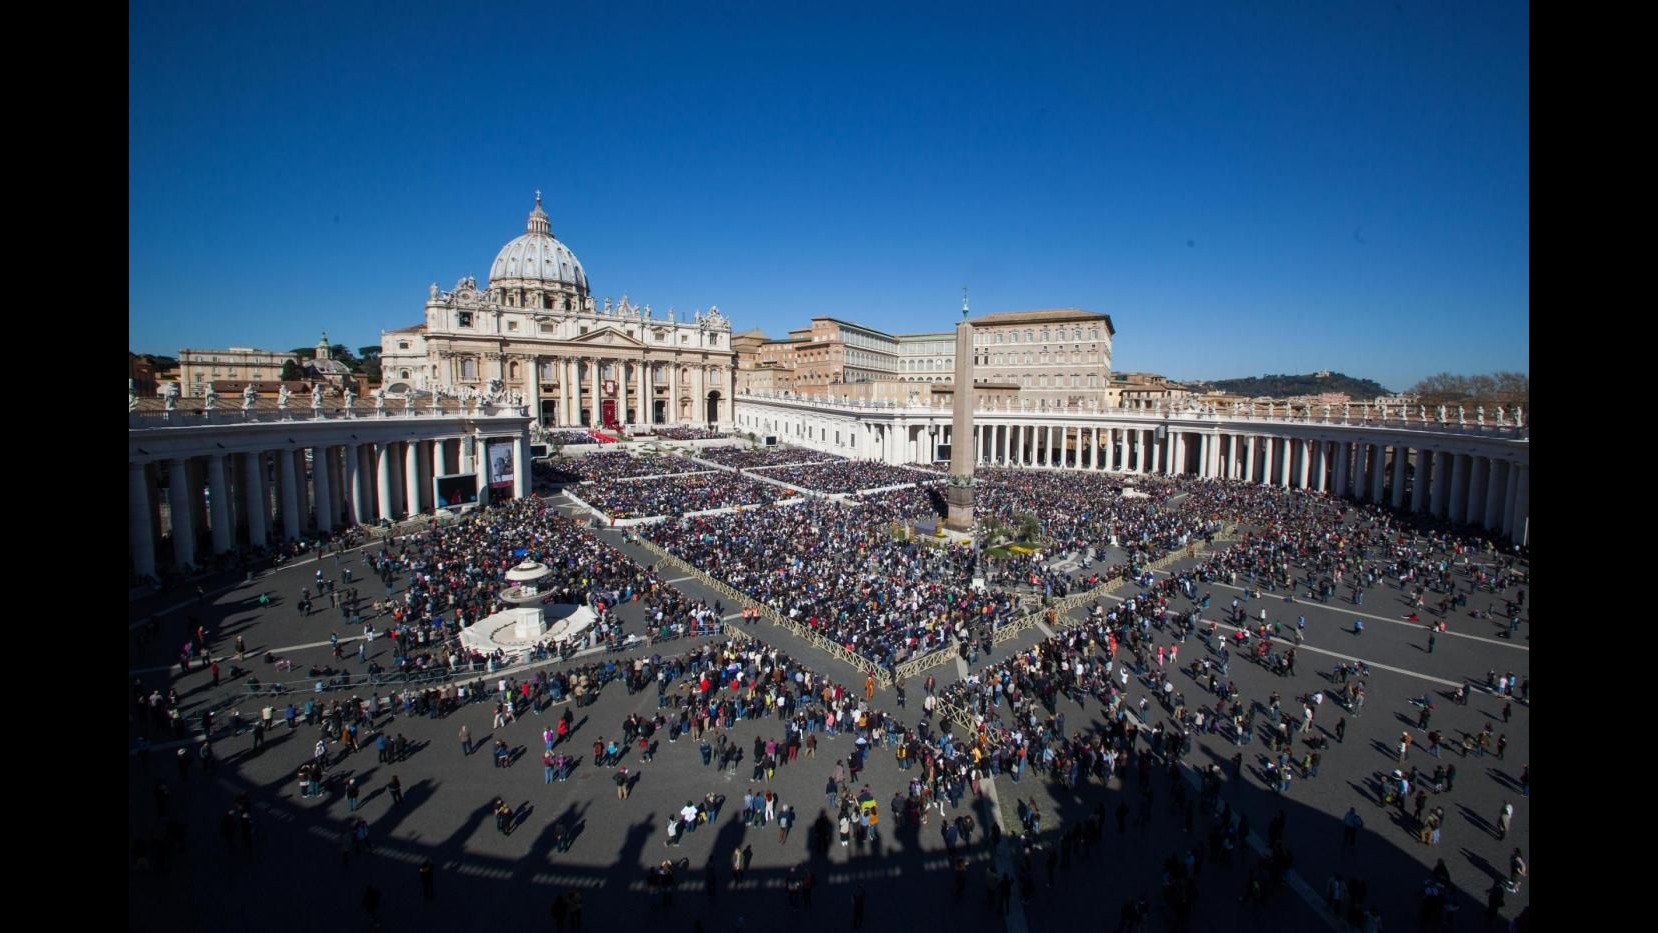 Vaticano, diminuiscono fedeli a incontri col Papa: -2,7 mln nel 2015